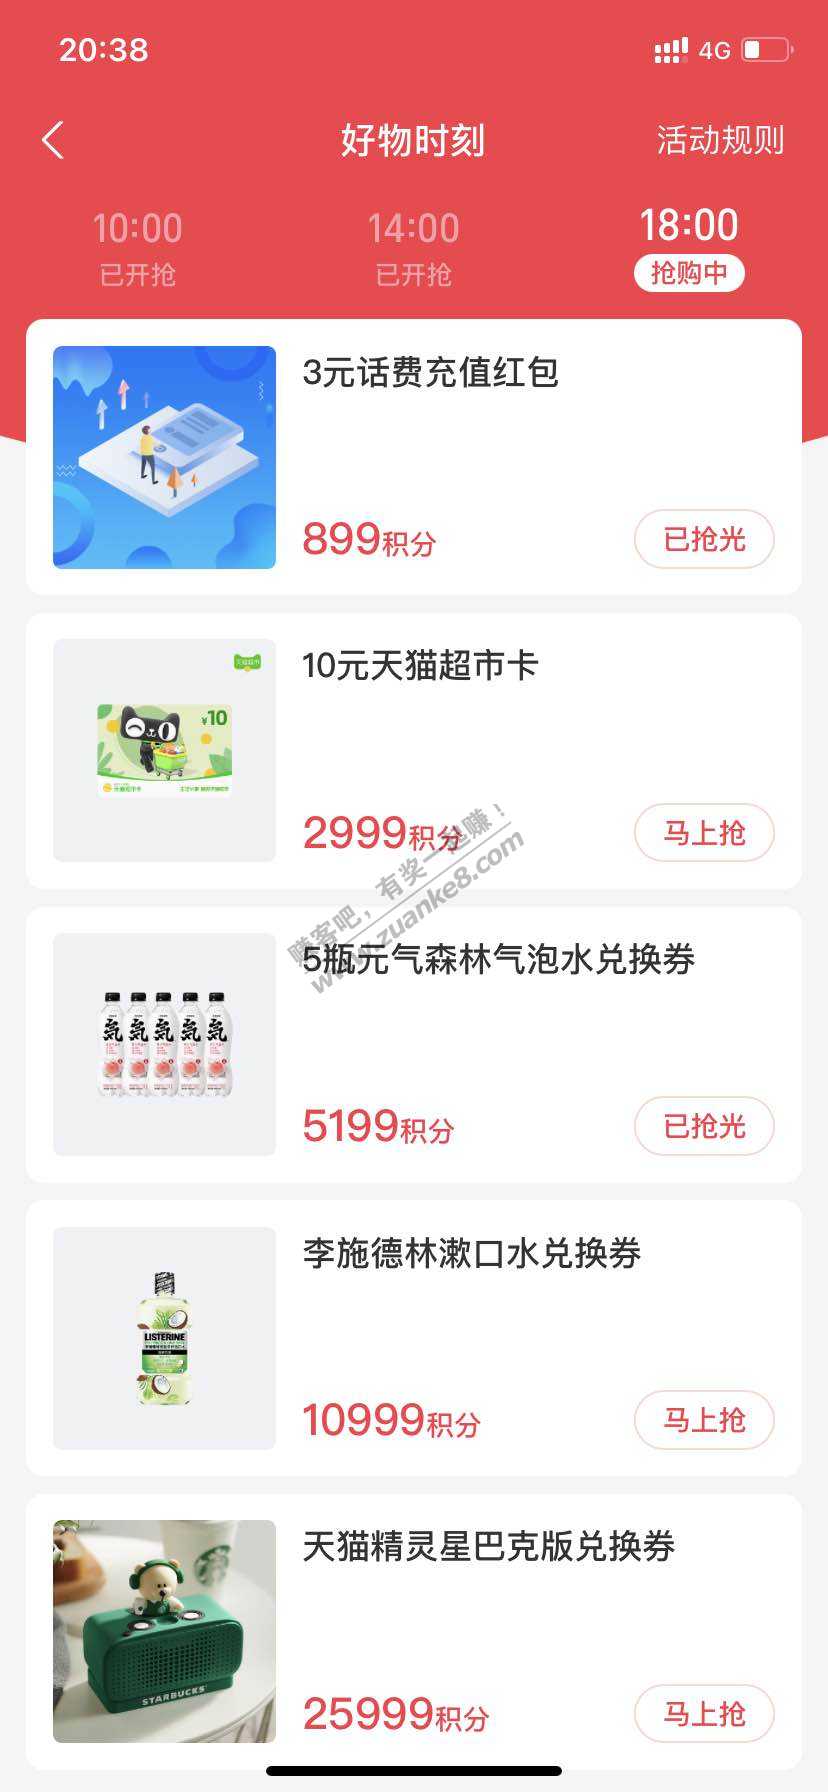 支付宝2999积分兑换10元天猫超市卡-惠小助(52huixz.com)